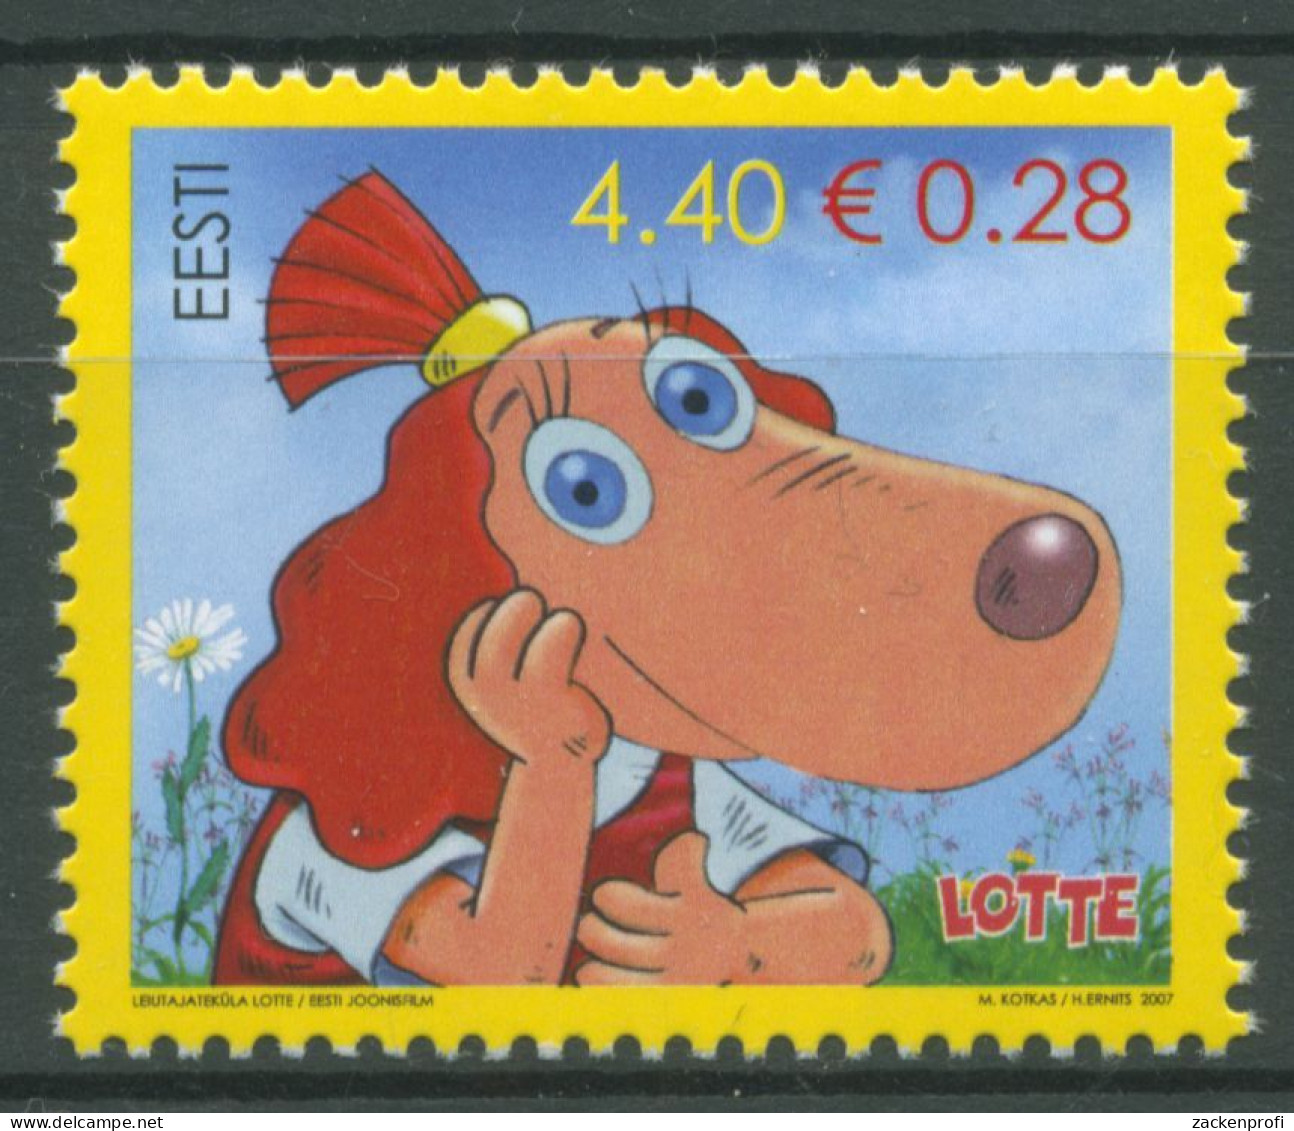 Estland 2007 Zeichentrick Kinofilm Lotte From Gadgetville 572 Postfrisch - Estonia